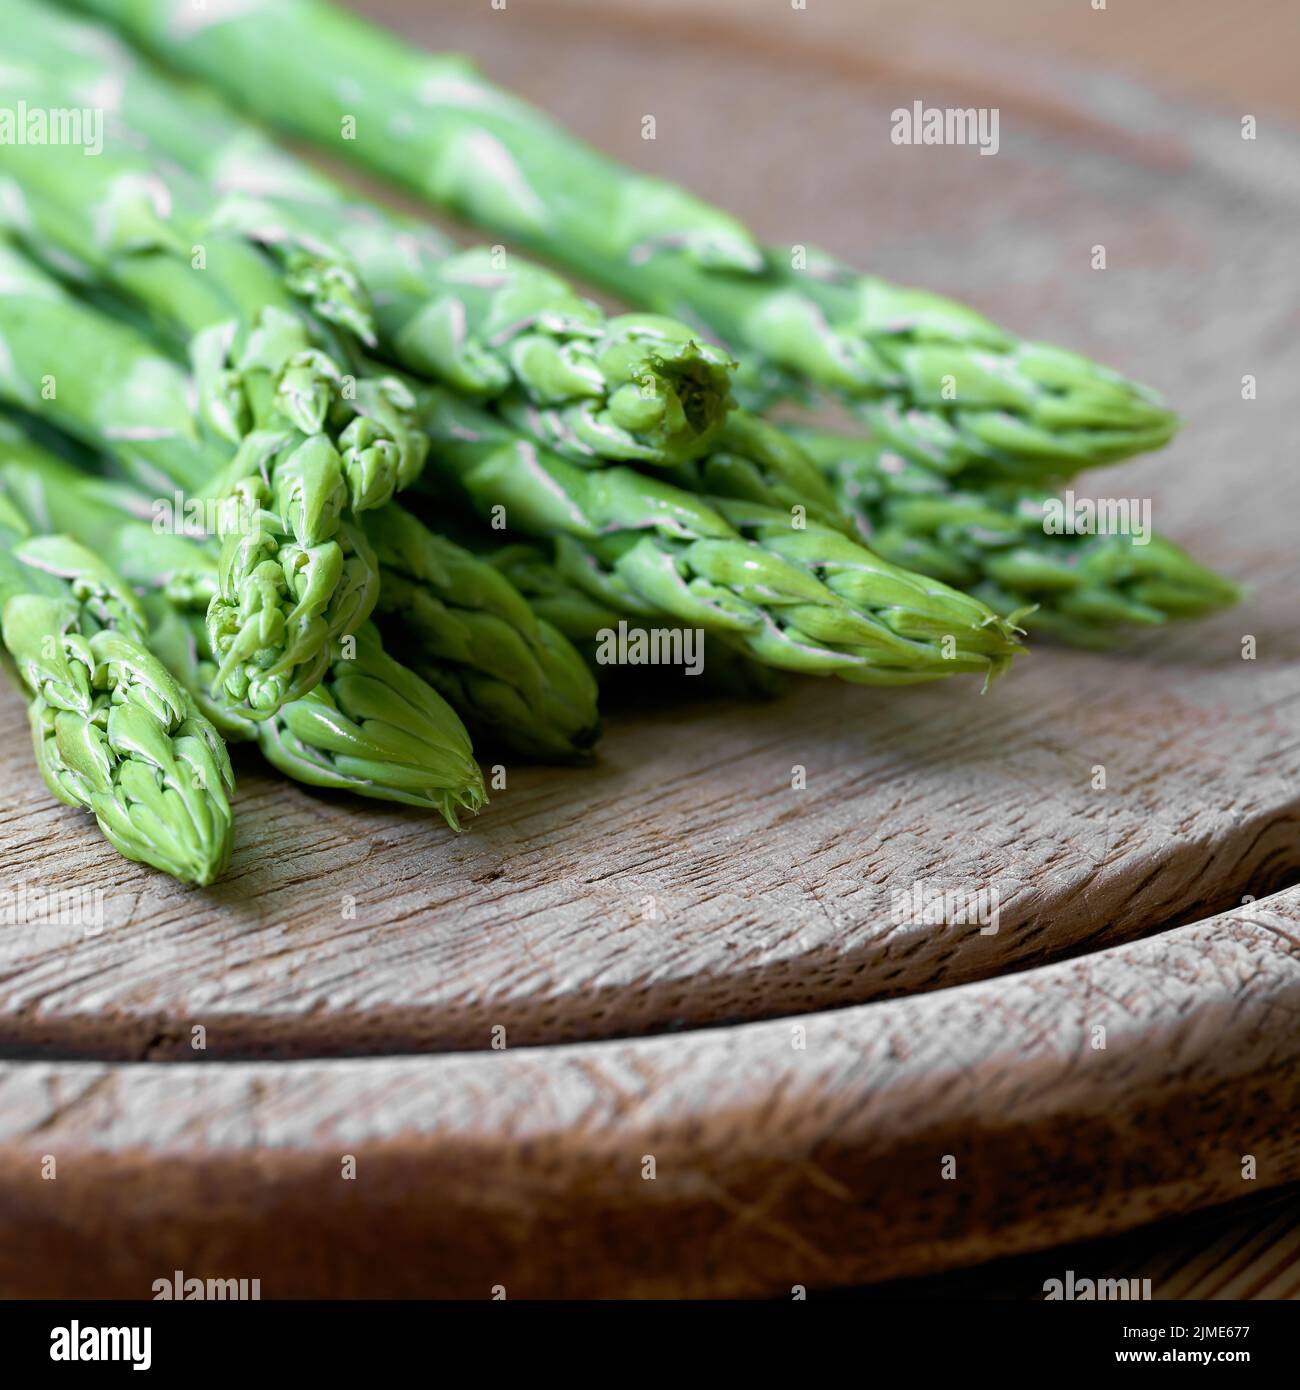 Asparagi verdi freschi da un campo di asparagi come ingrediente in una cucina Foto Stock